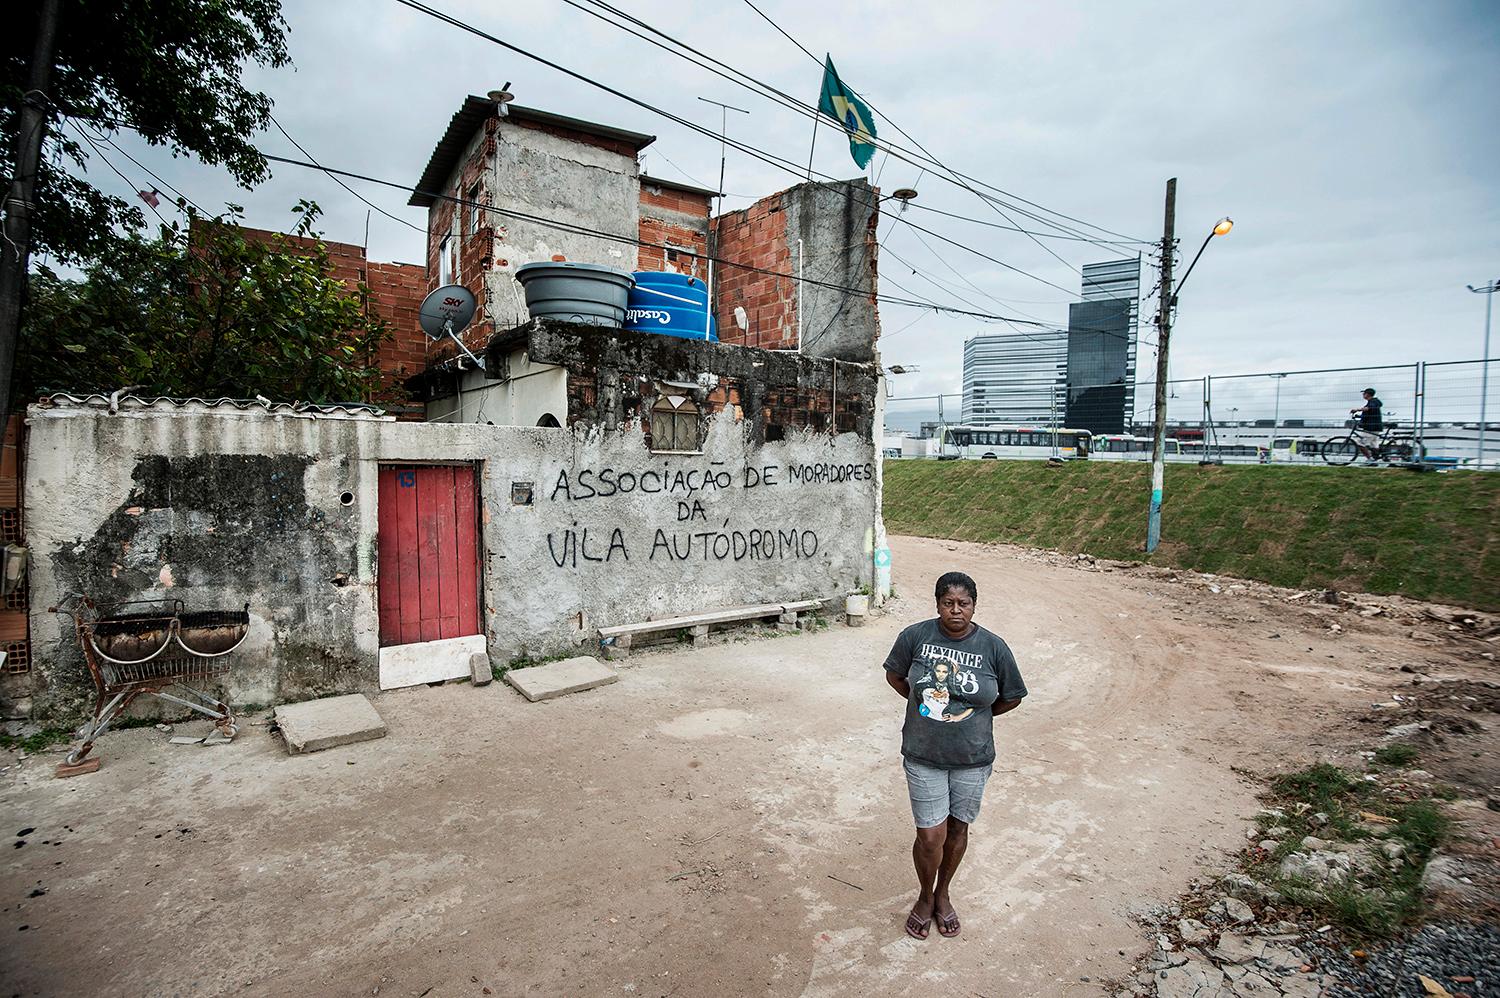 Sandra Regina Damiao har bott i området Vila Autódromoi Barra i 20 år. När OS hamnade i Rio ombads hon flytta, men hon vägrade. Nu är hon den sista tillsammans med sin familj att bo kvar. Snart rivs hennes hus.